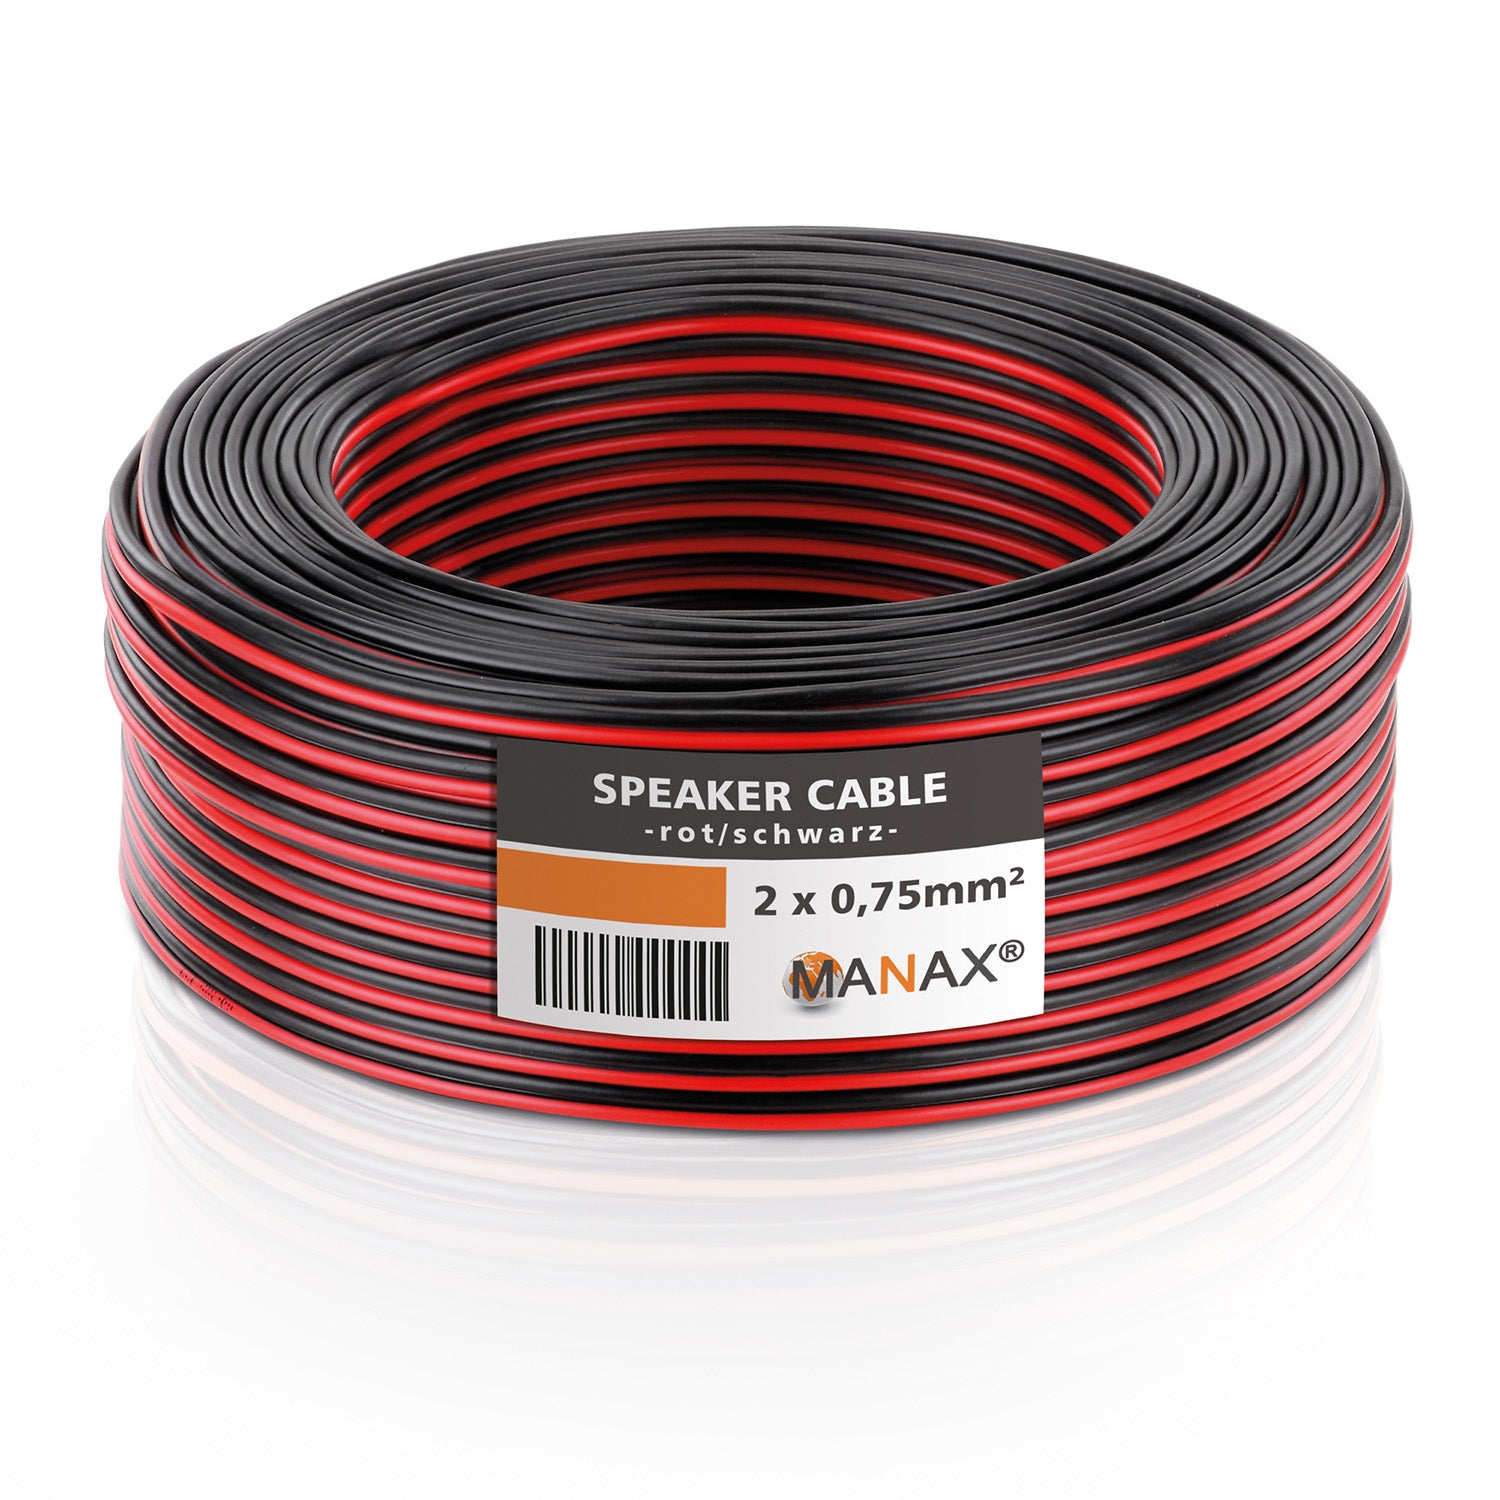 Lautsprecherkabel Audio Kabel Boxenkabel 100% CCA 50m 2x0,75mm² rot / schwarz